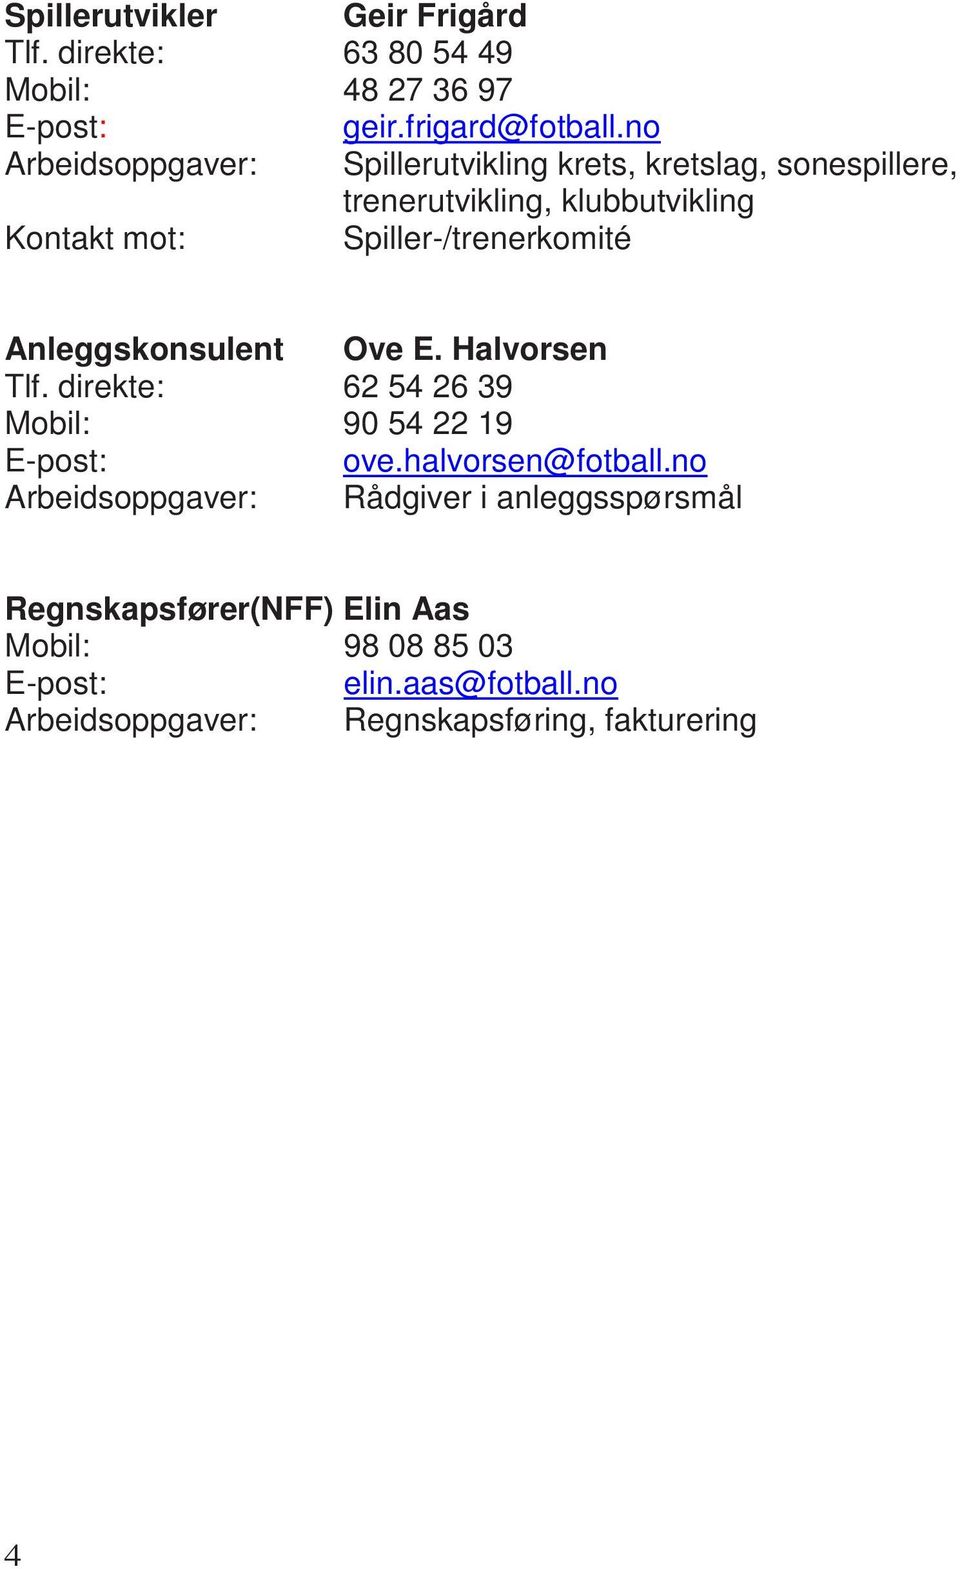 Anleggskonsulent Ove E. Halvorsen Tlf. direkte: 62 54 26 39 Mobil: 90 54 22 19 E-post: ove.halvorsen@fotball.